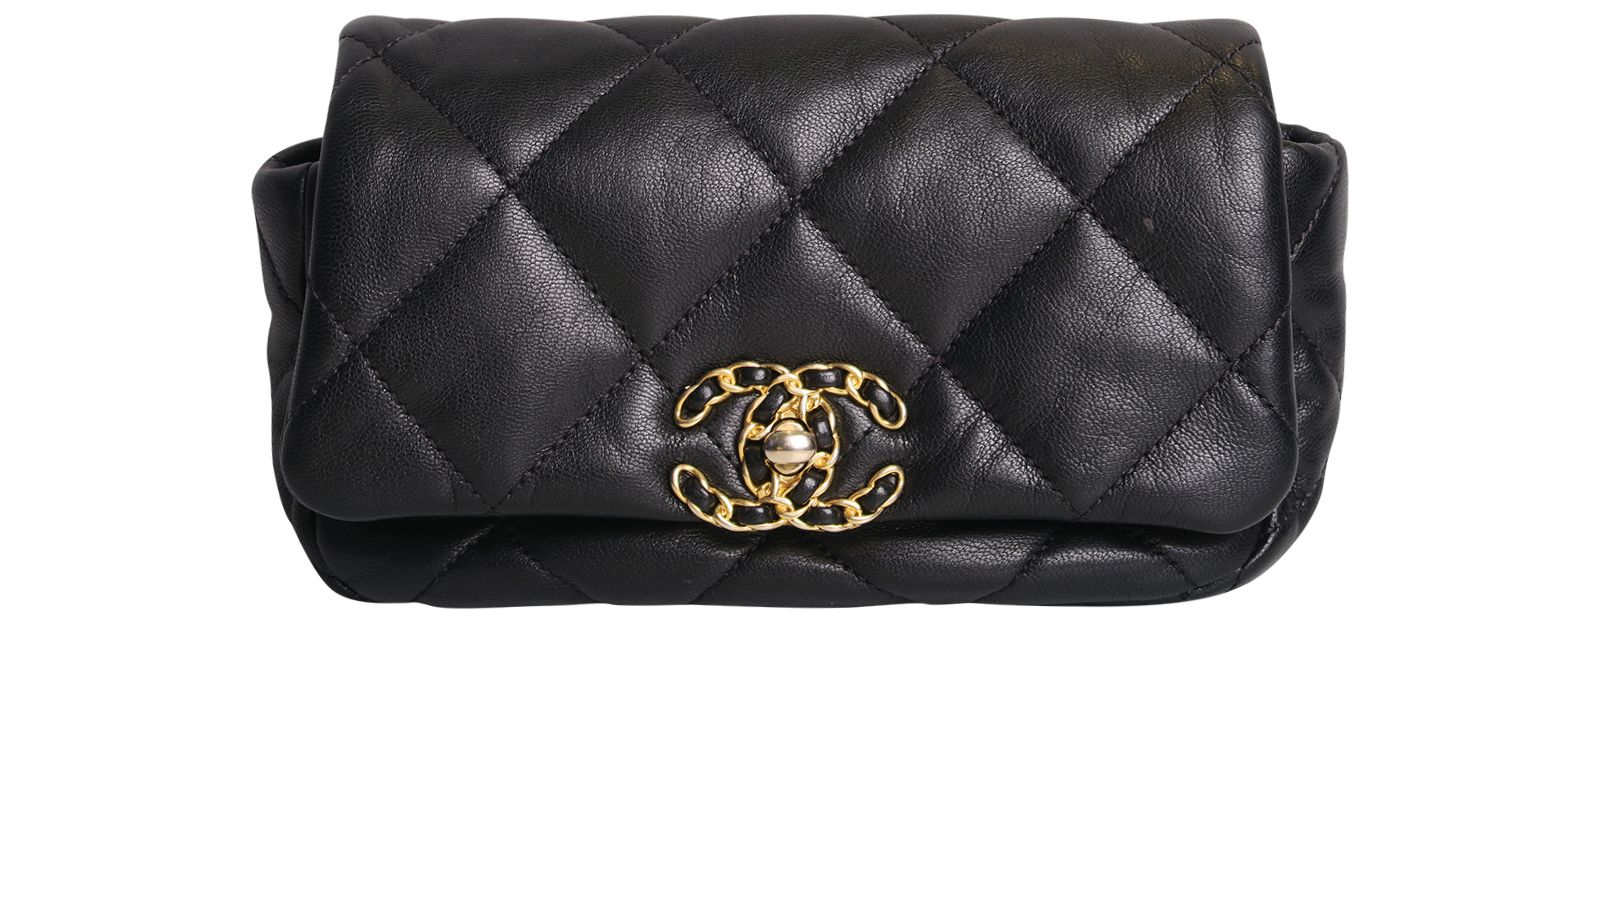 Chanel 19 Belt Bag - Designer WishBags